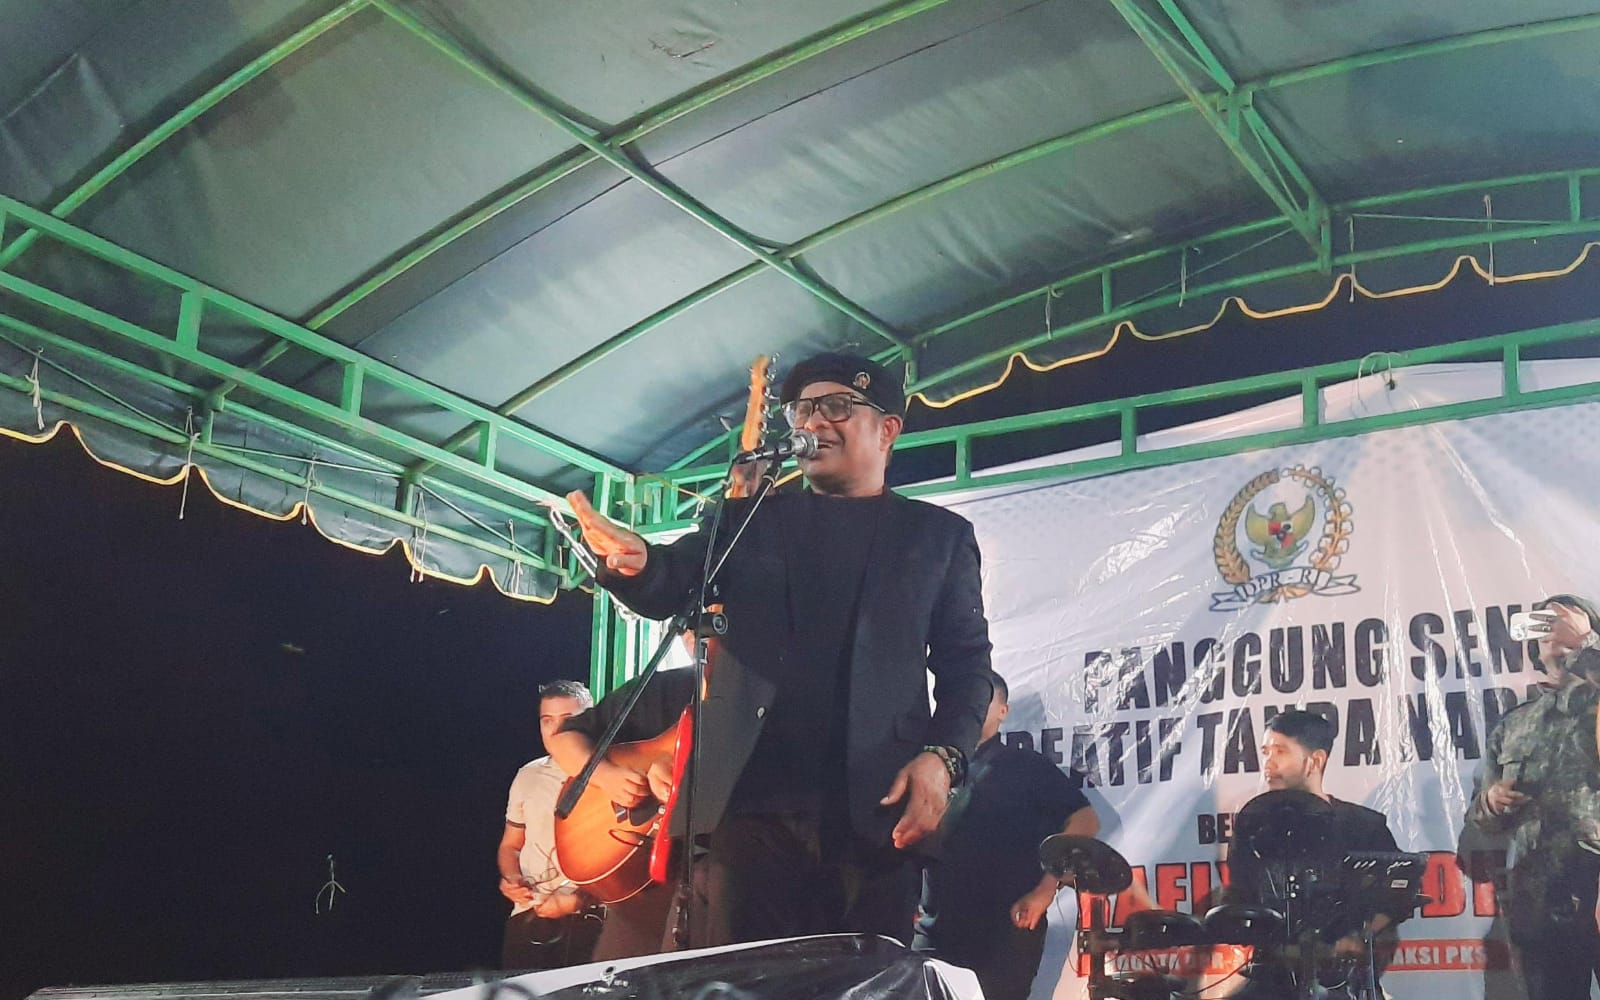 Rafly Kande Gelar Panggung Seni Kreatif Tanpa Narkoba di Aceh Selatan